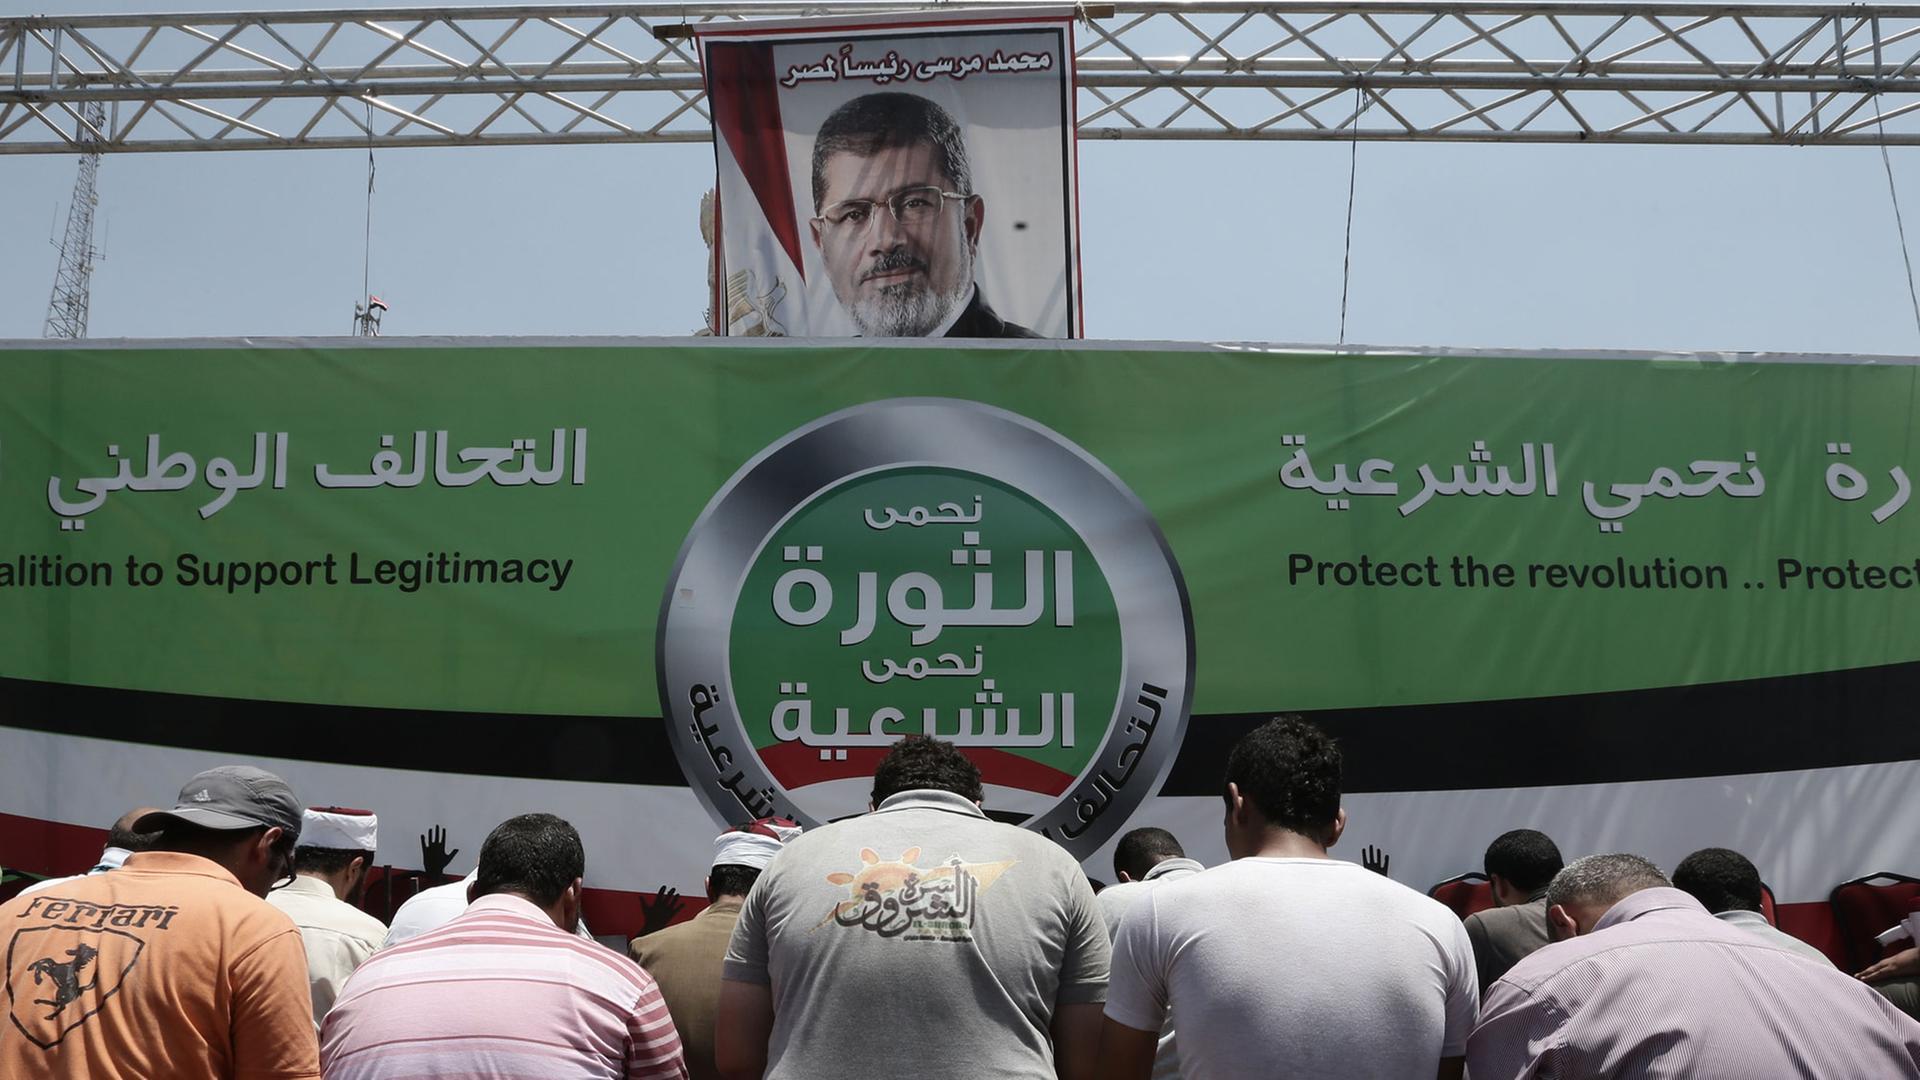 Das Bild zeigt ein Plakat, auf dem Ex-Präsident Mursi abgebildet ist